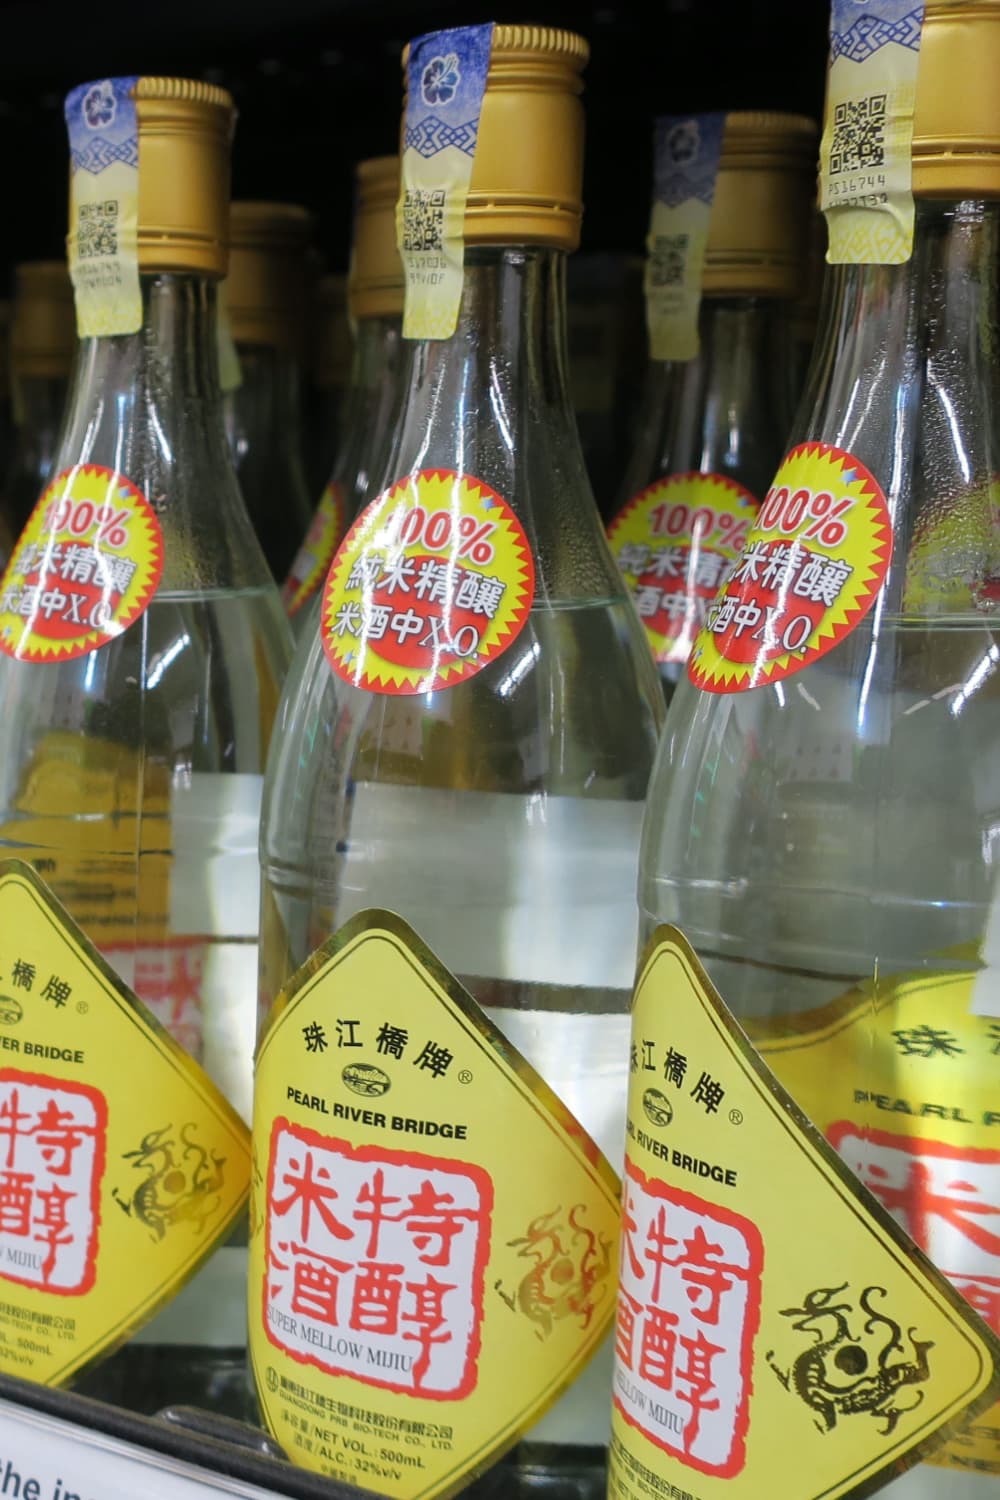 Mijiu Bottles Displayed on Shelves